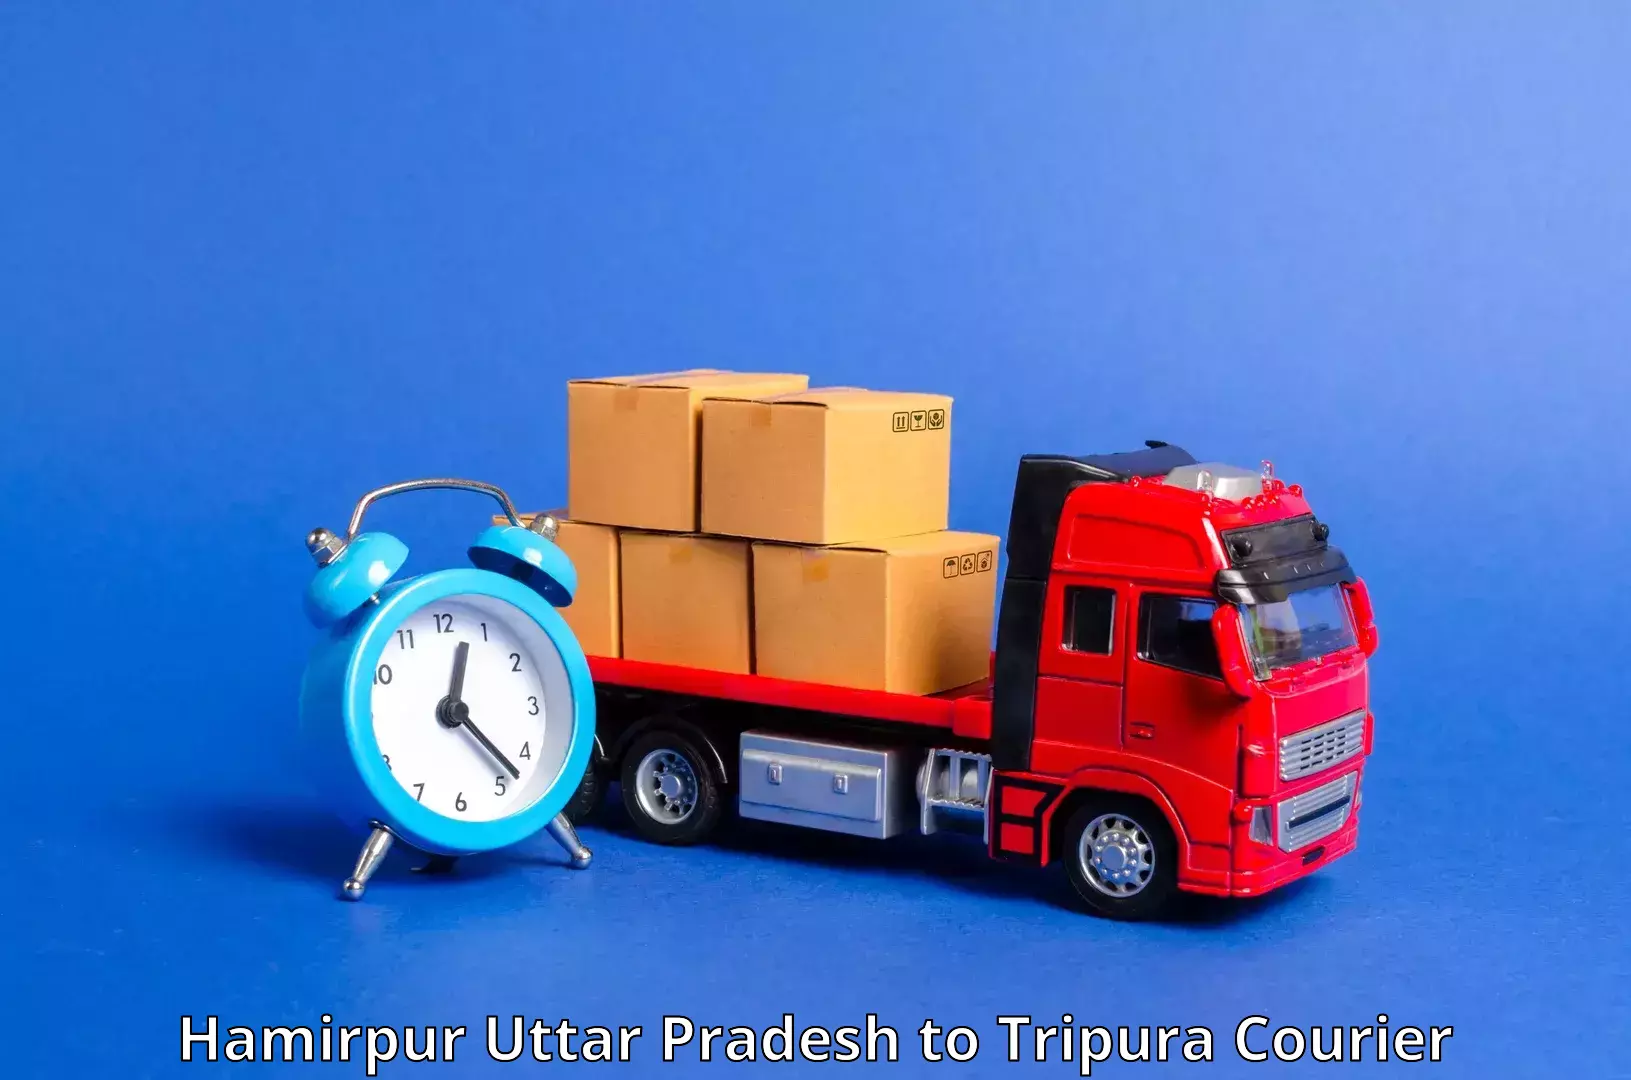 Next-generation courier services Hamirpur Uttar Pradesh to Tripura